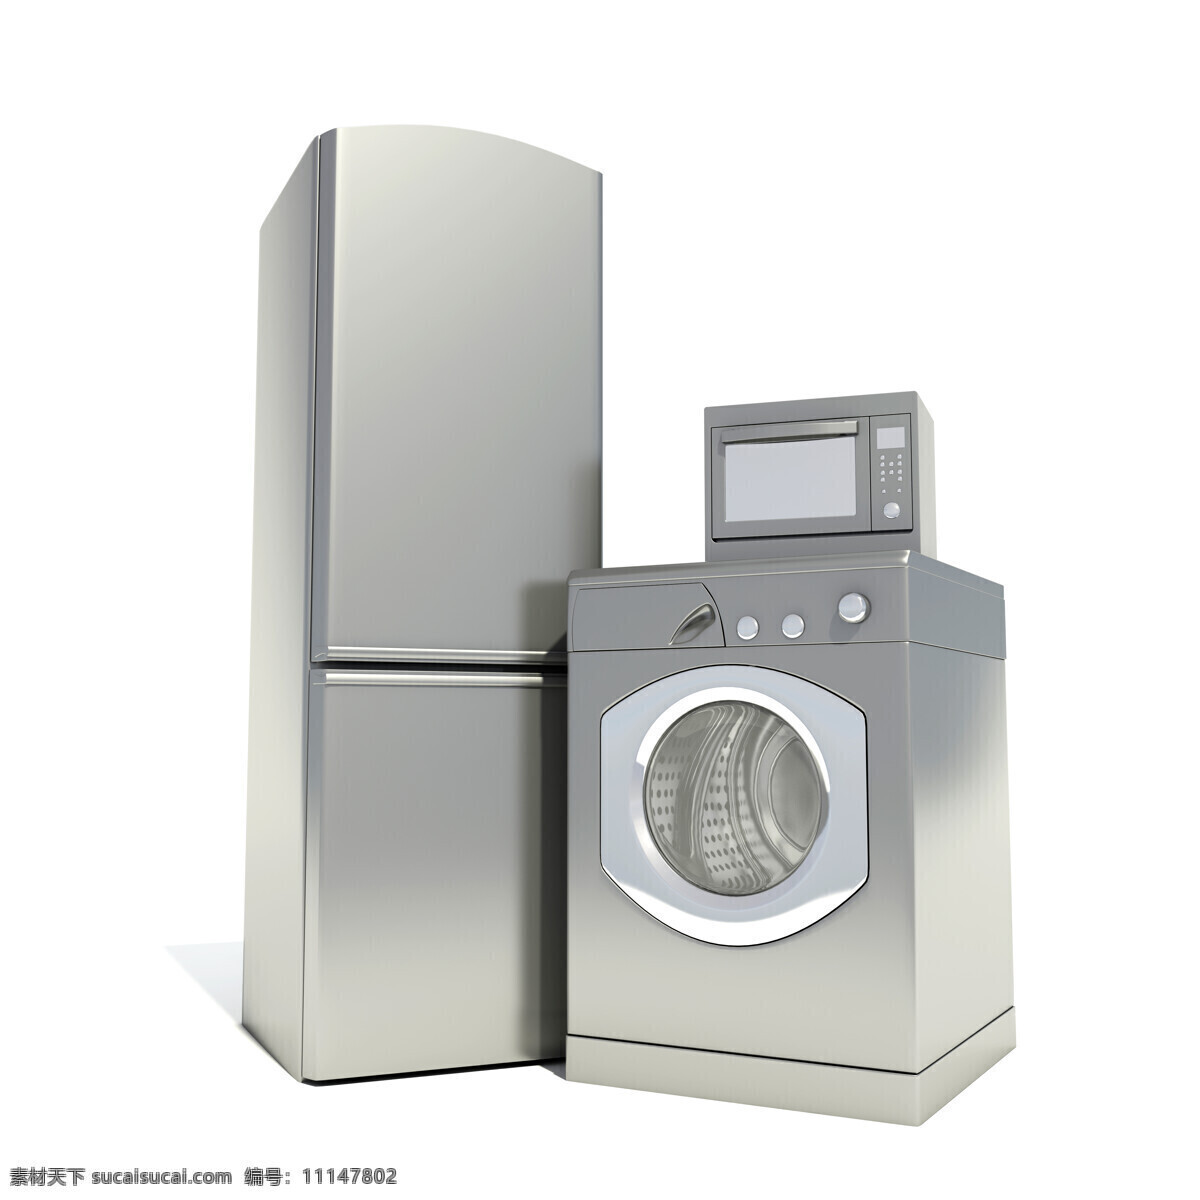 冰箱 干洗机 洗衣机 电器 微波炉 电冰箱 家电 家电设备 家用电器 电器设备 生活用品 生活百科